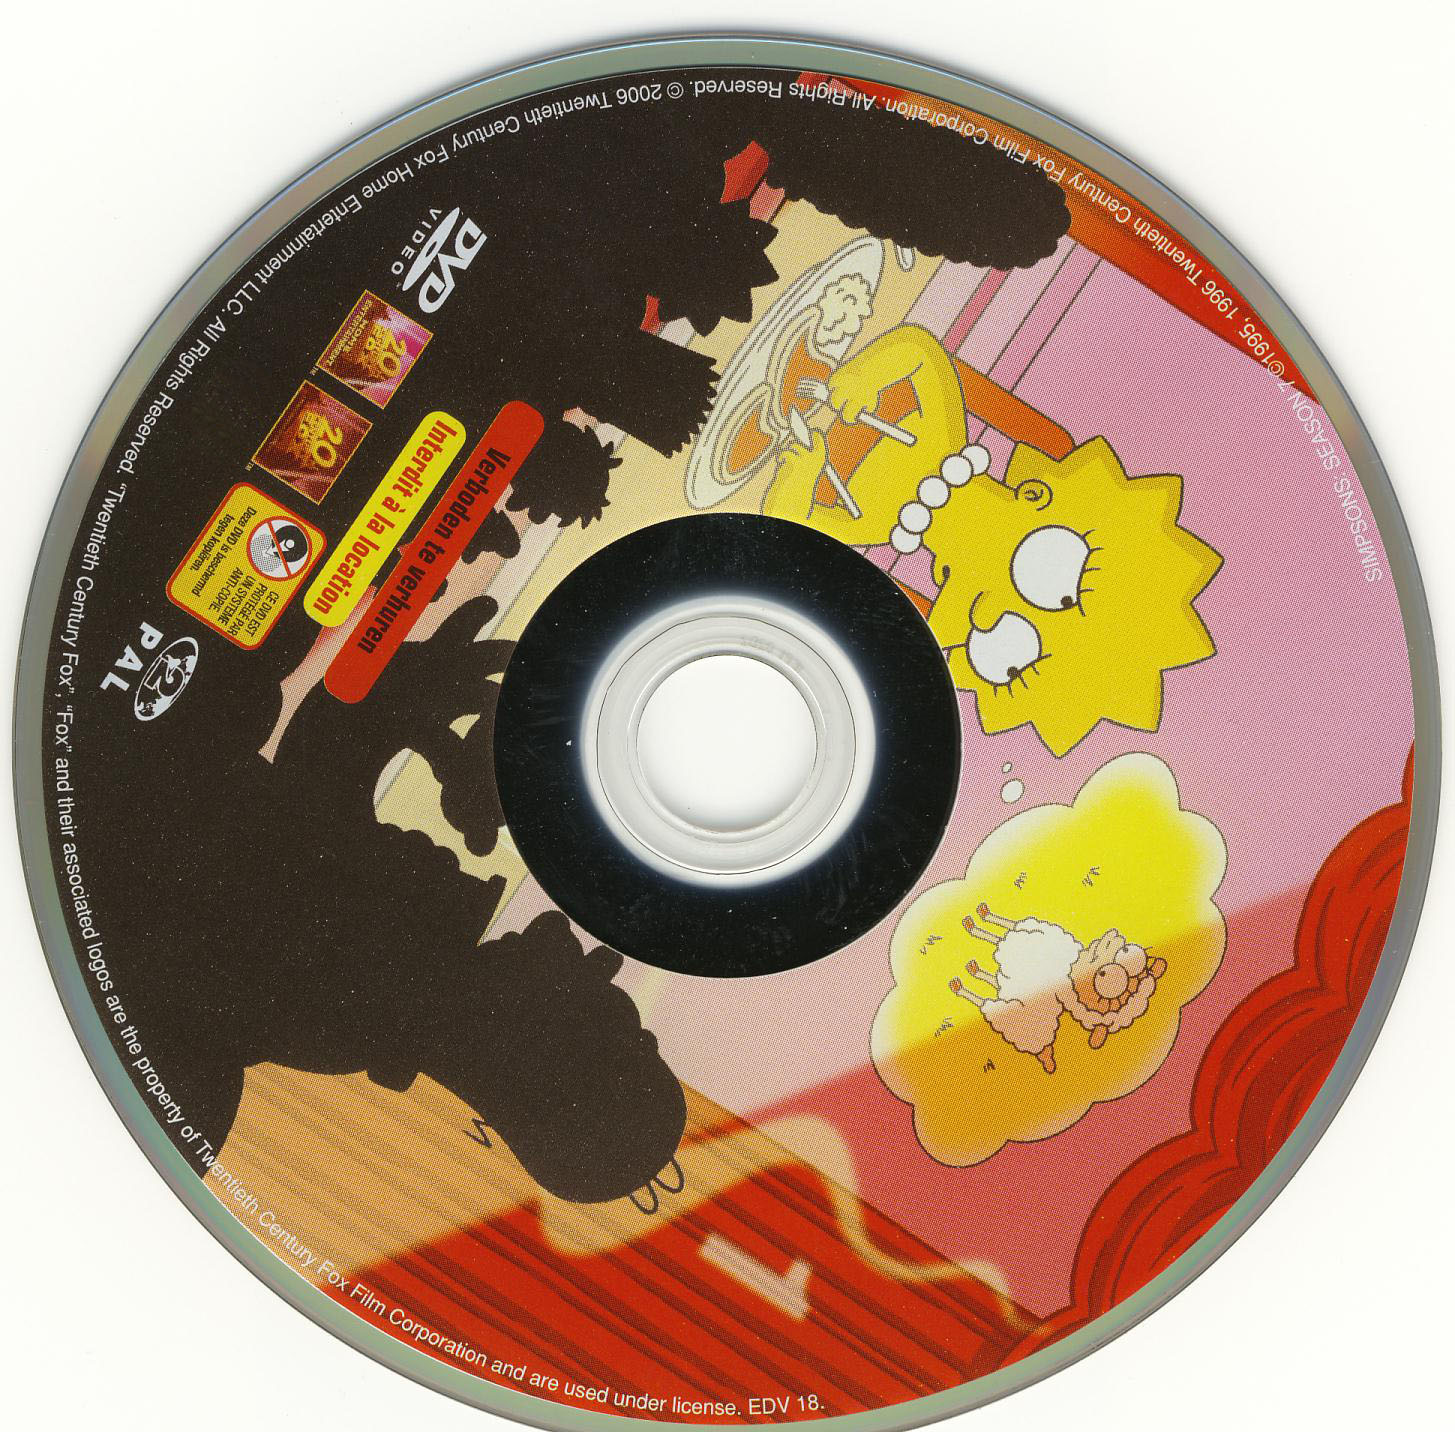 Les Simpsons Saison 7 vol 1